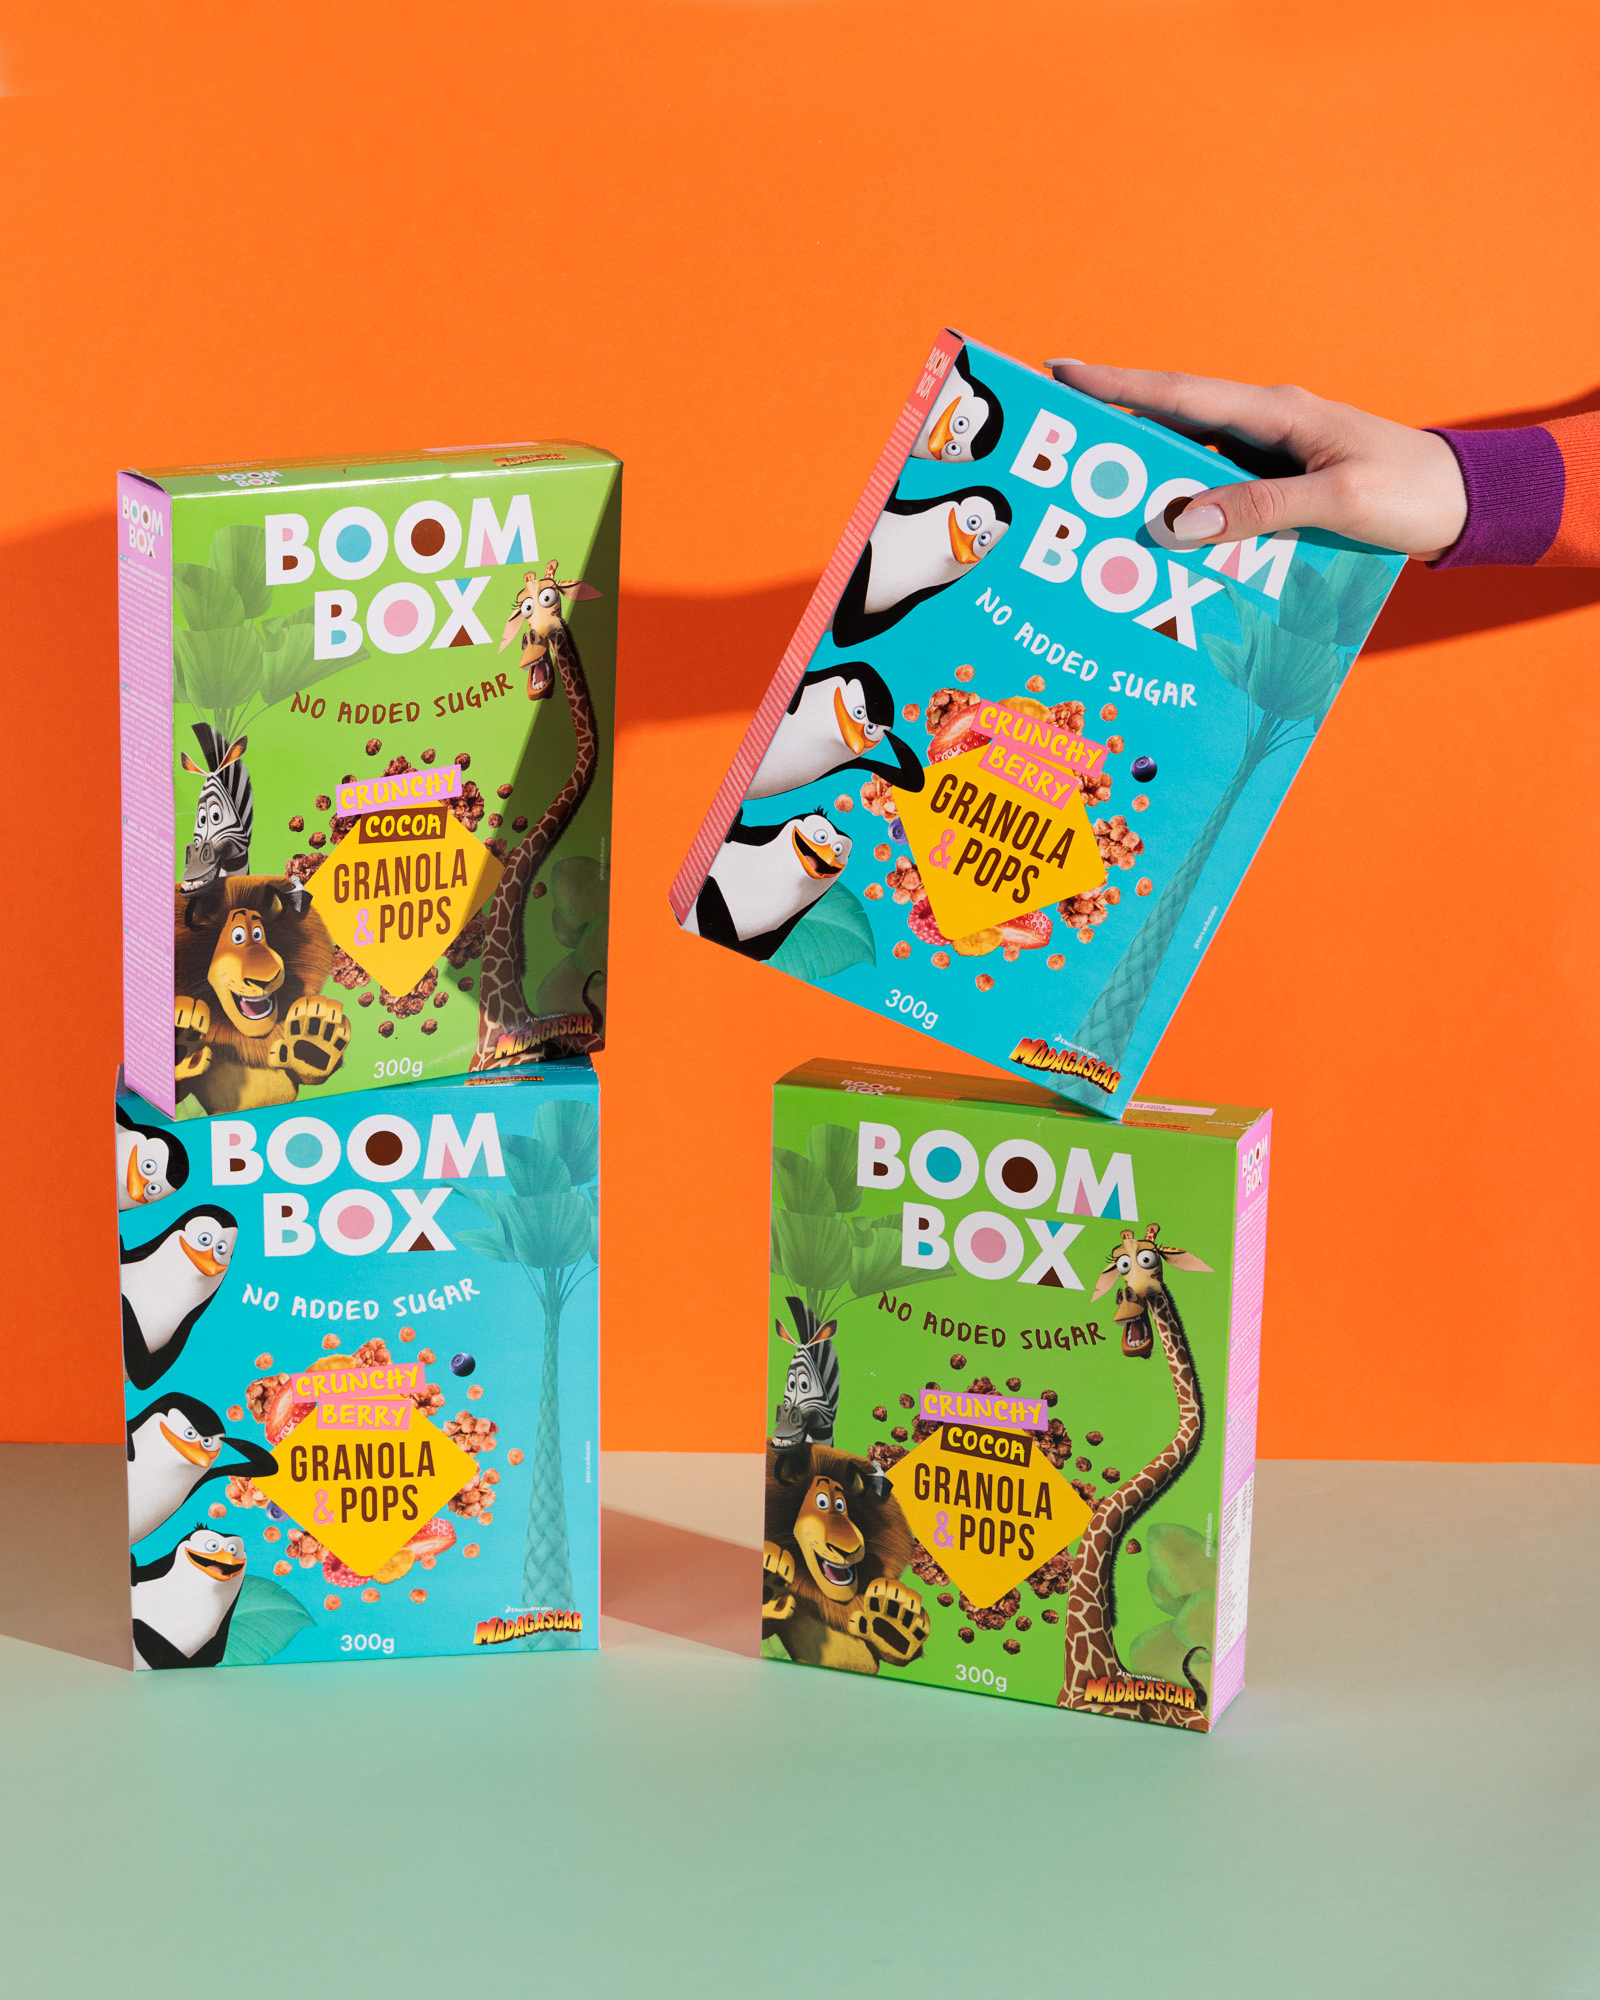 Boom Box žitarice zdrava prehrana djeca hello magazine croatia hrvatska Granola&Pops za djecu